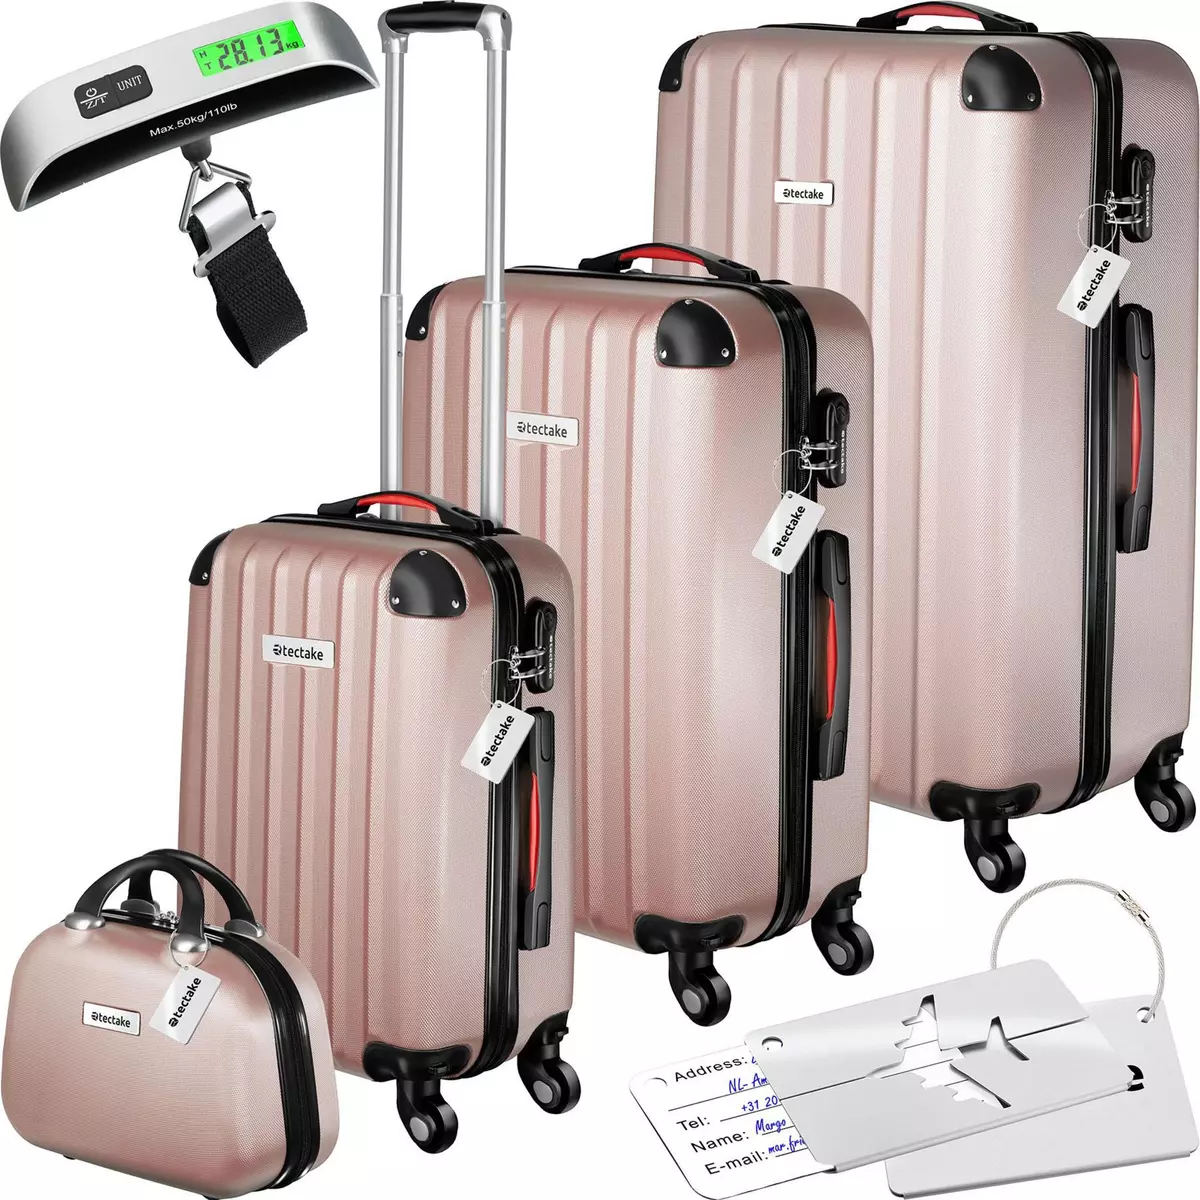 tectake Set de valises rigides Cleo 4 pièces avec pèse-valise